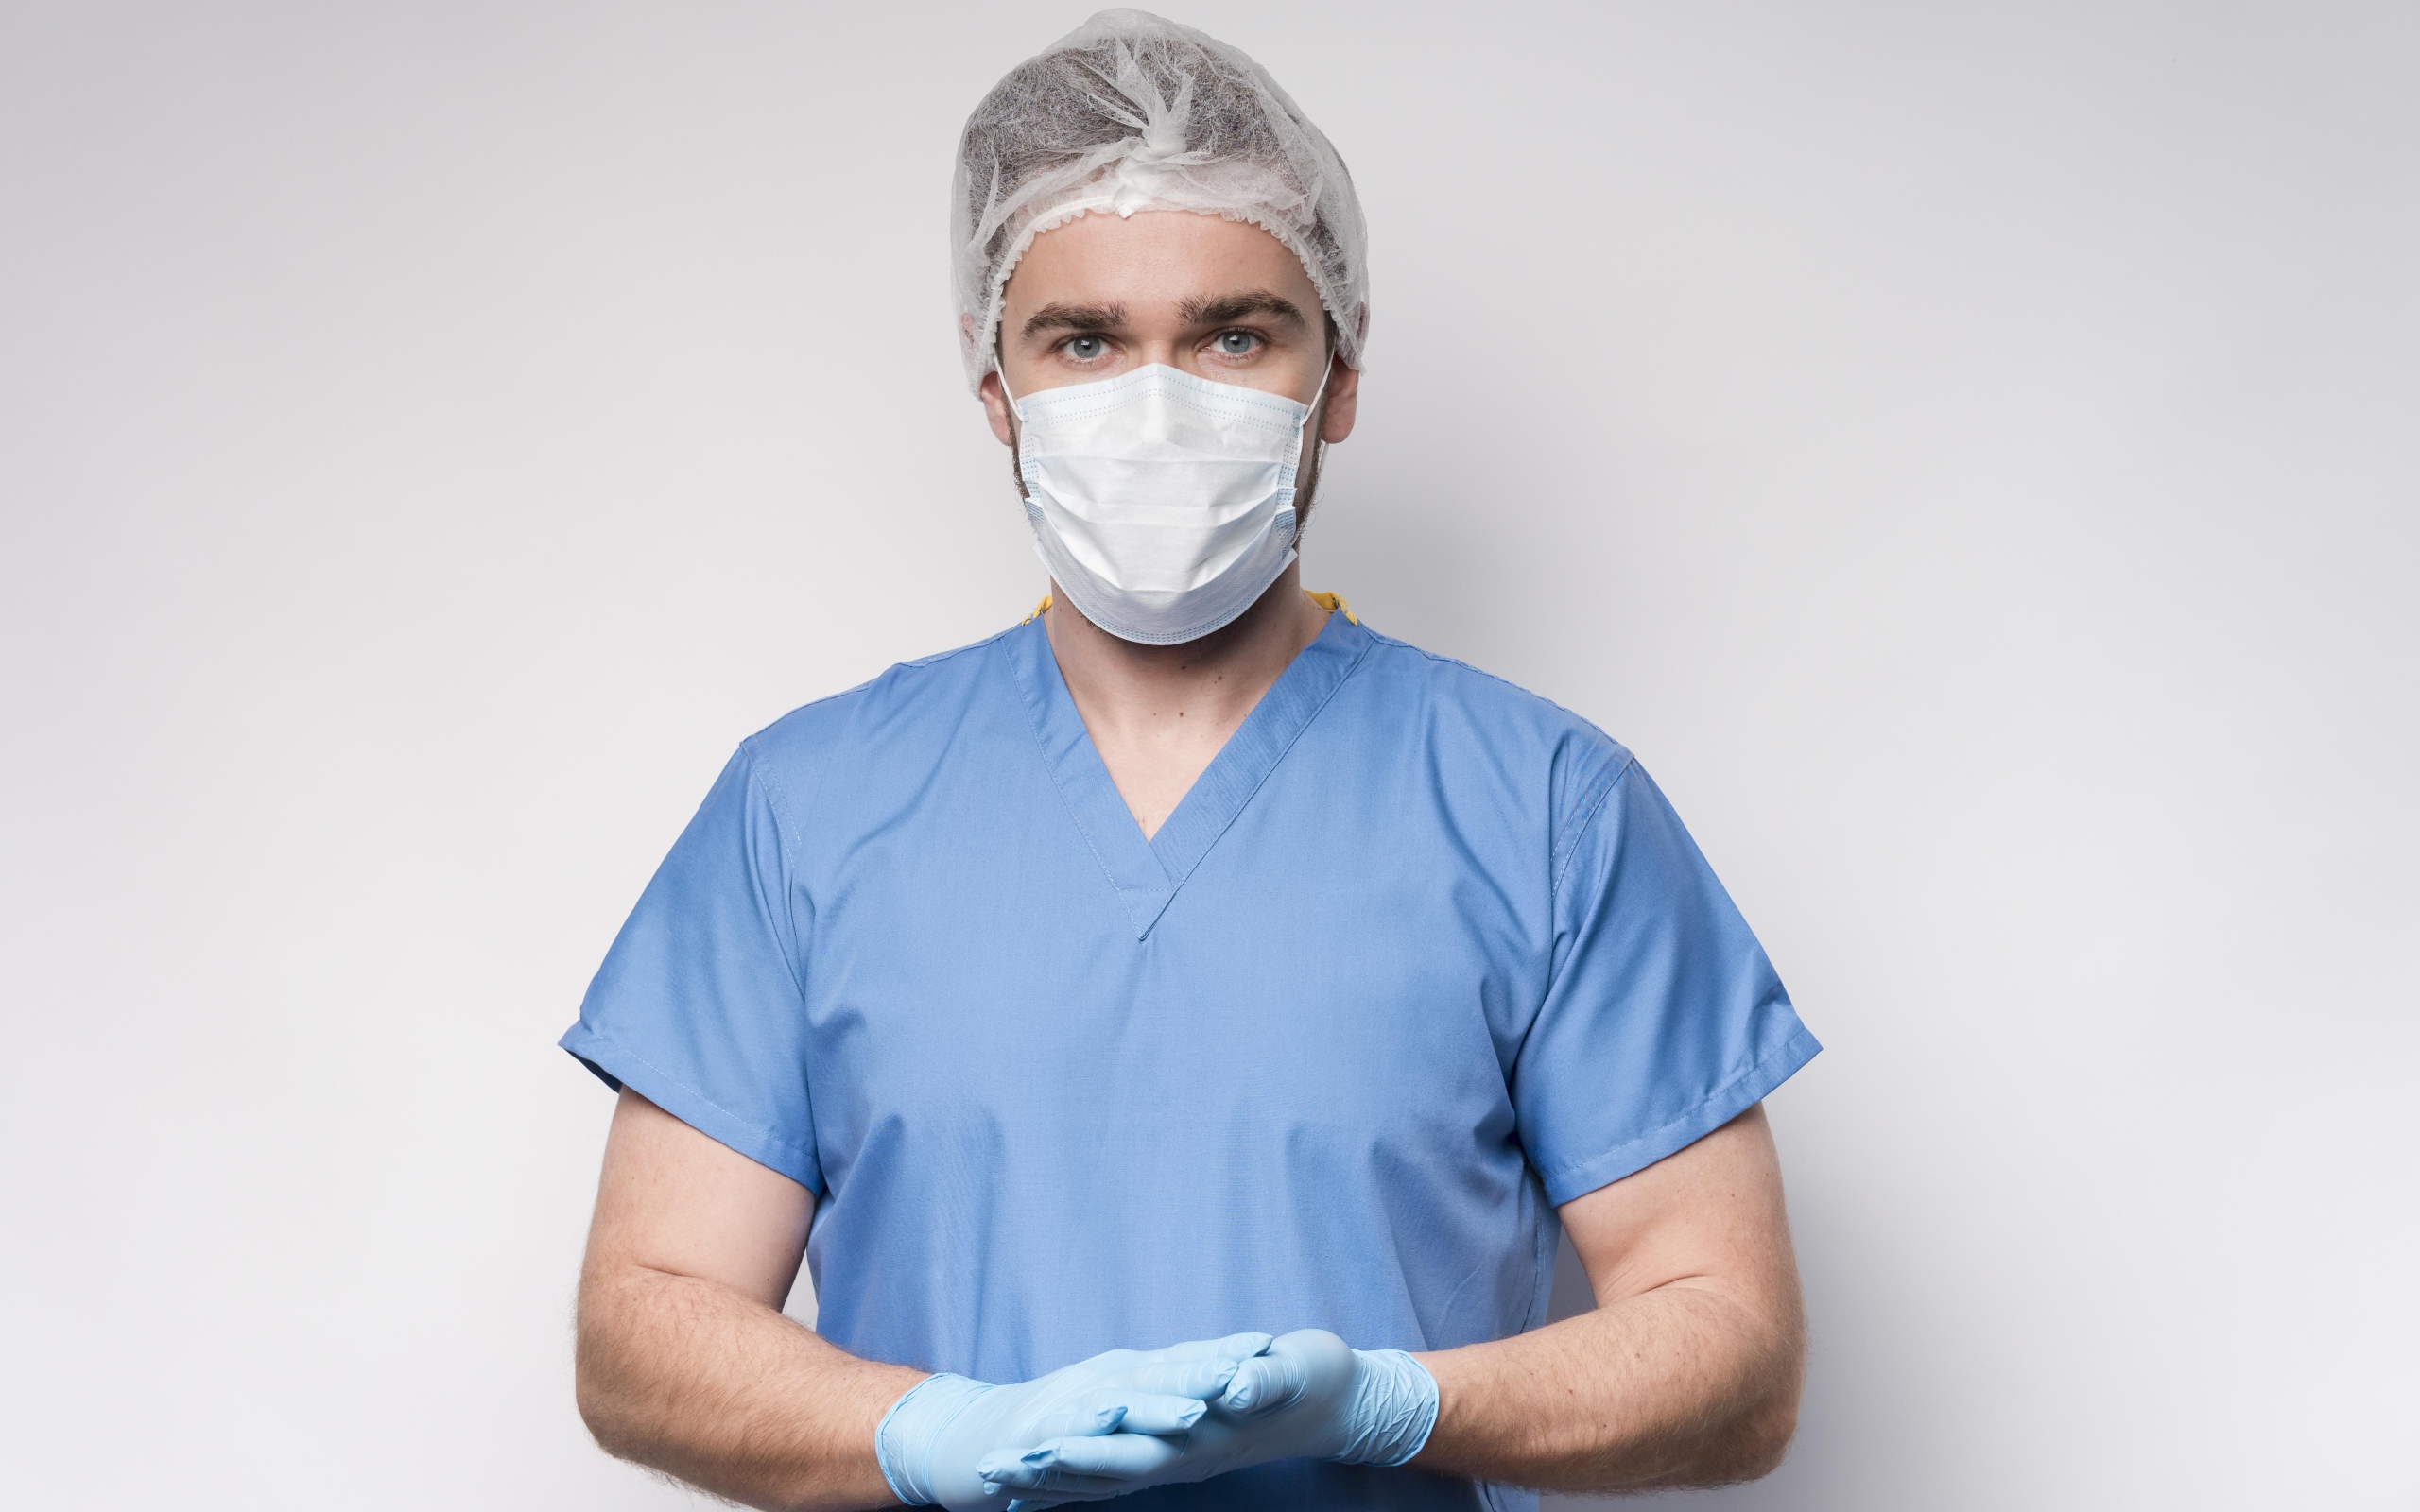 Мужчина врач в маске и перчатках на сером фоне